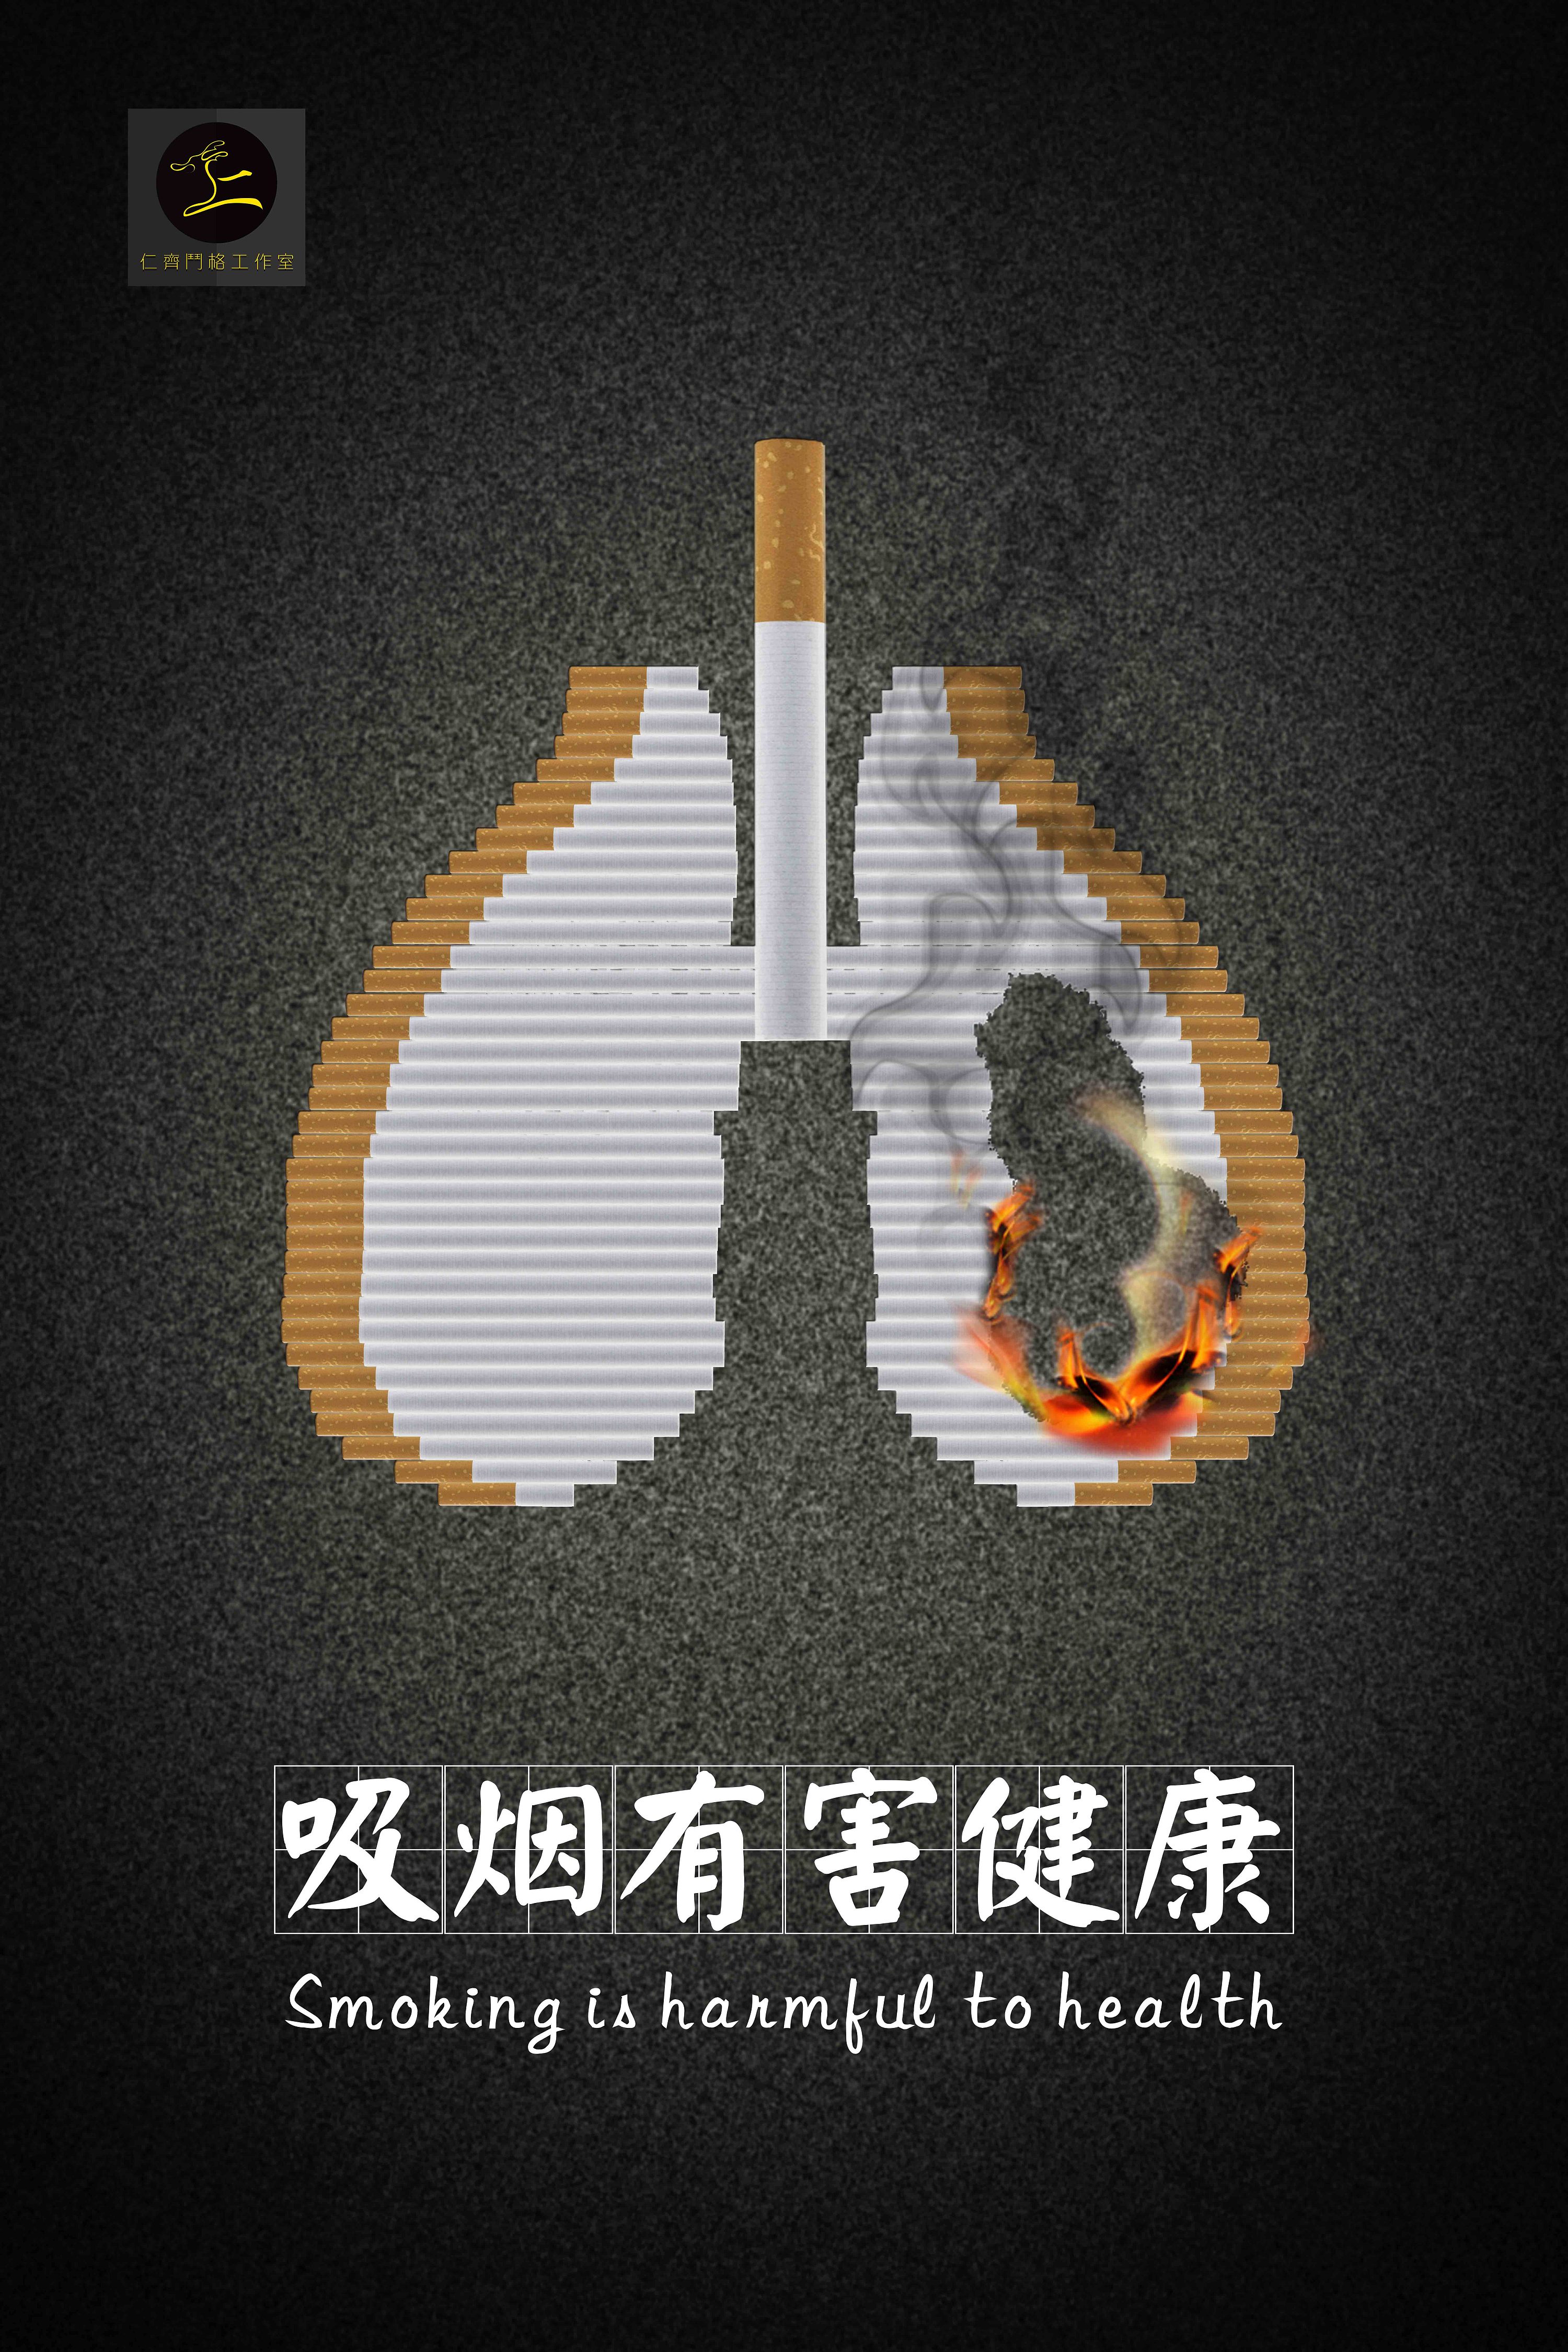 吸煙的人圖片素材-JPG圖片尺寸4187 × 2792px-高清圖案500325675-zh.lovepik.com